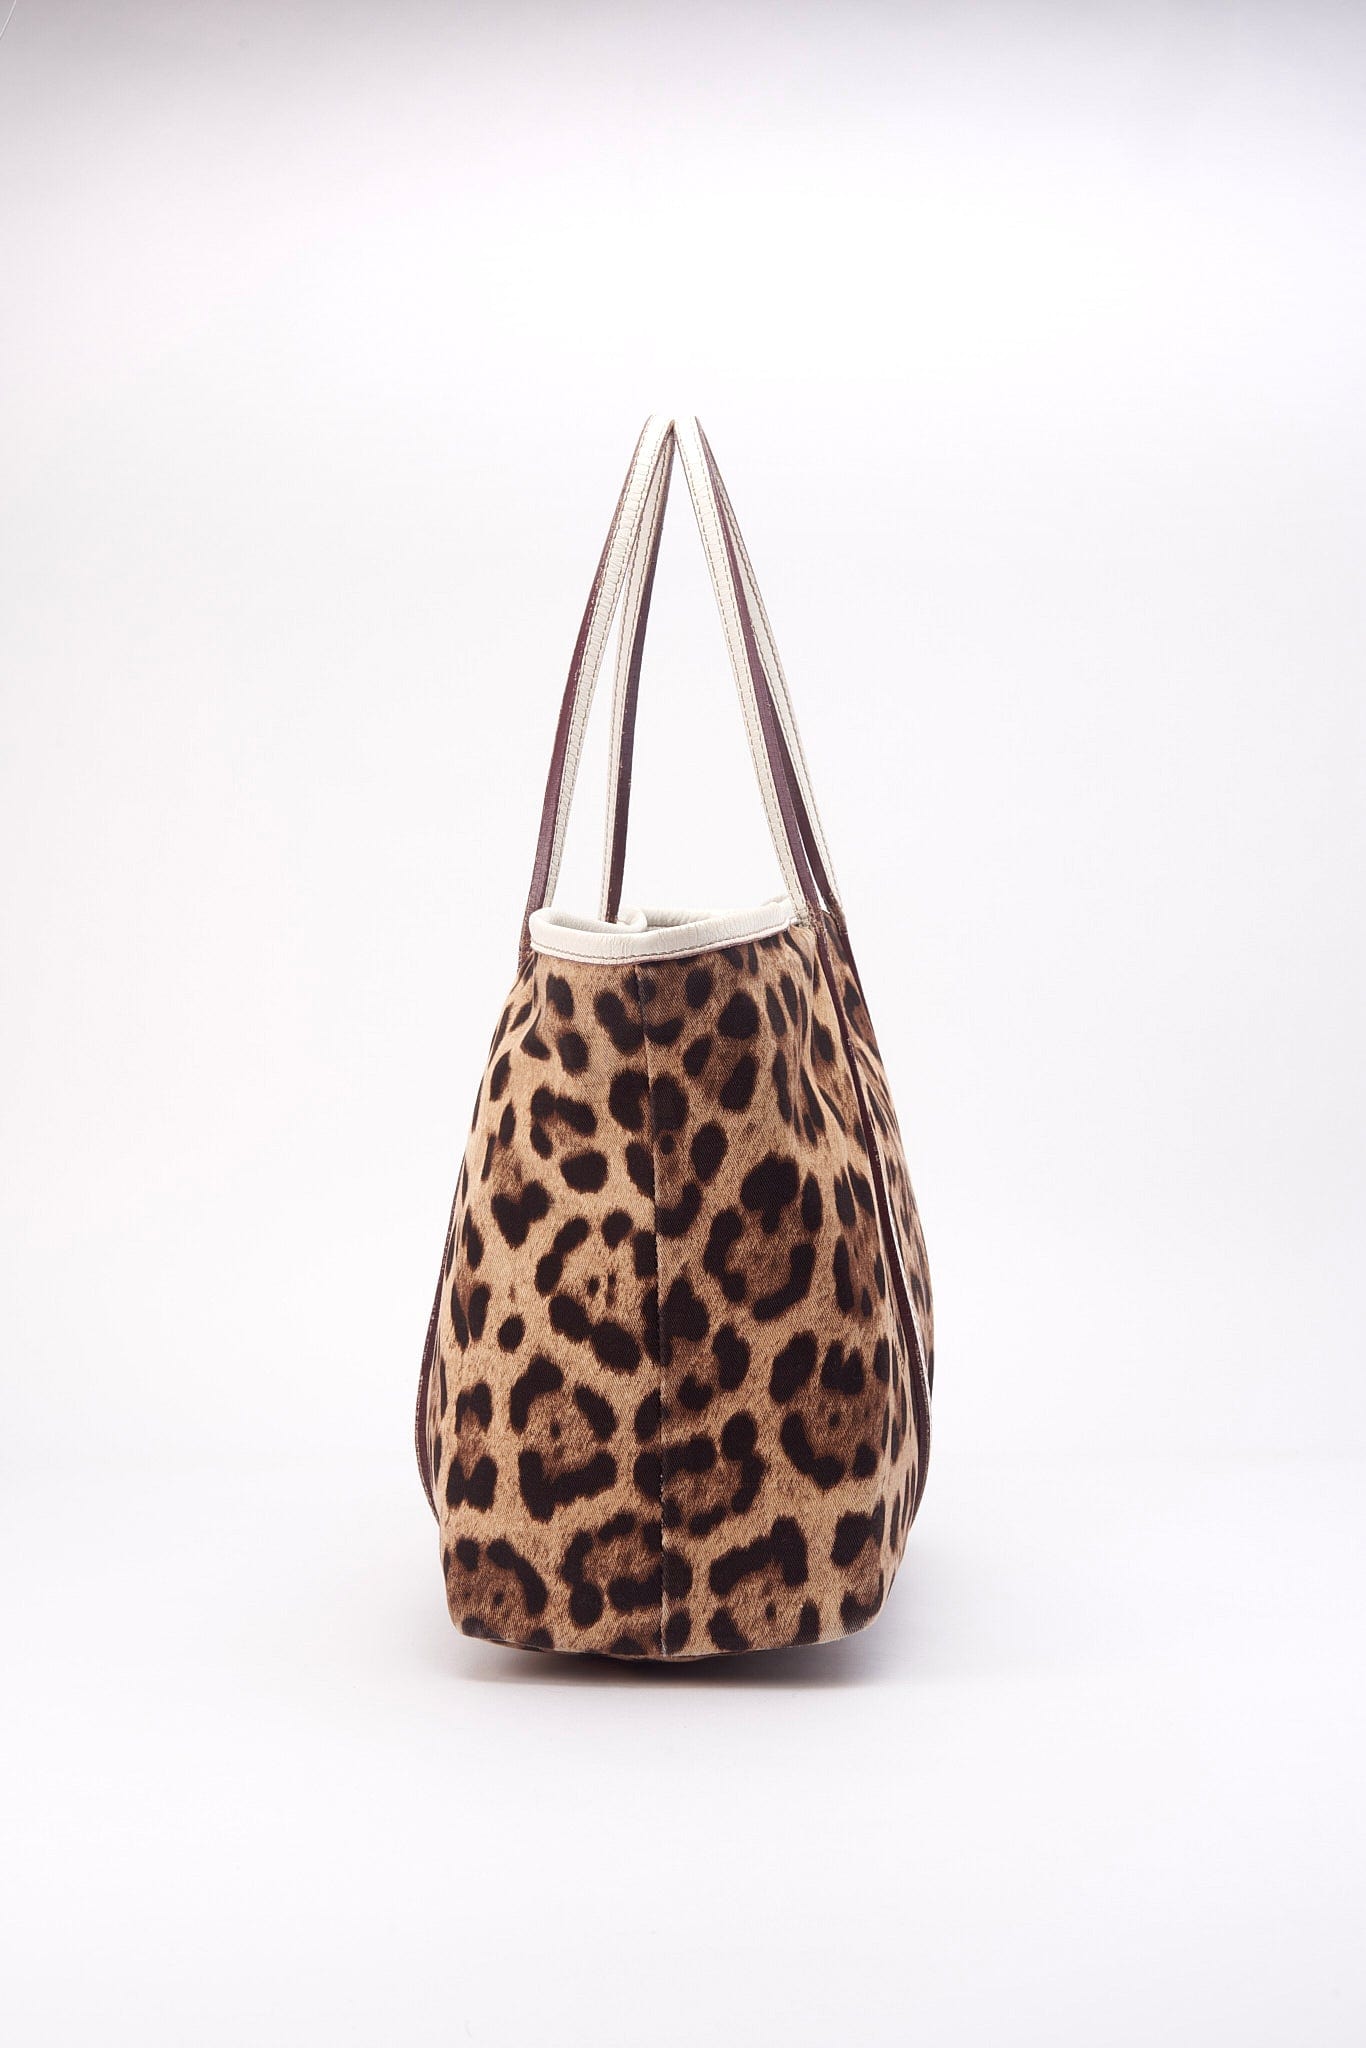 Vintage Dolce & Gabbana Leopard Print Tote Bag